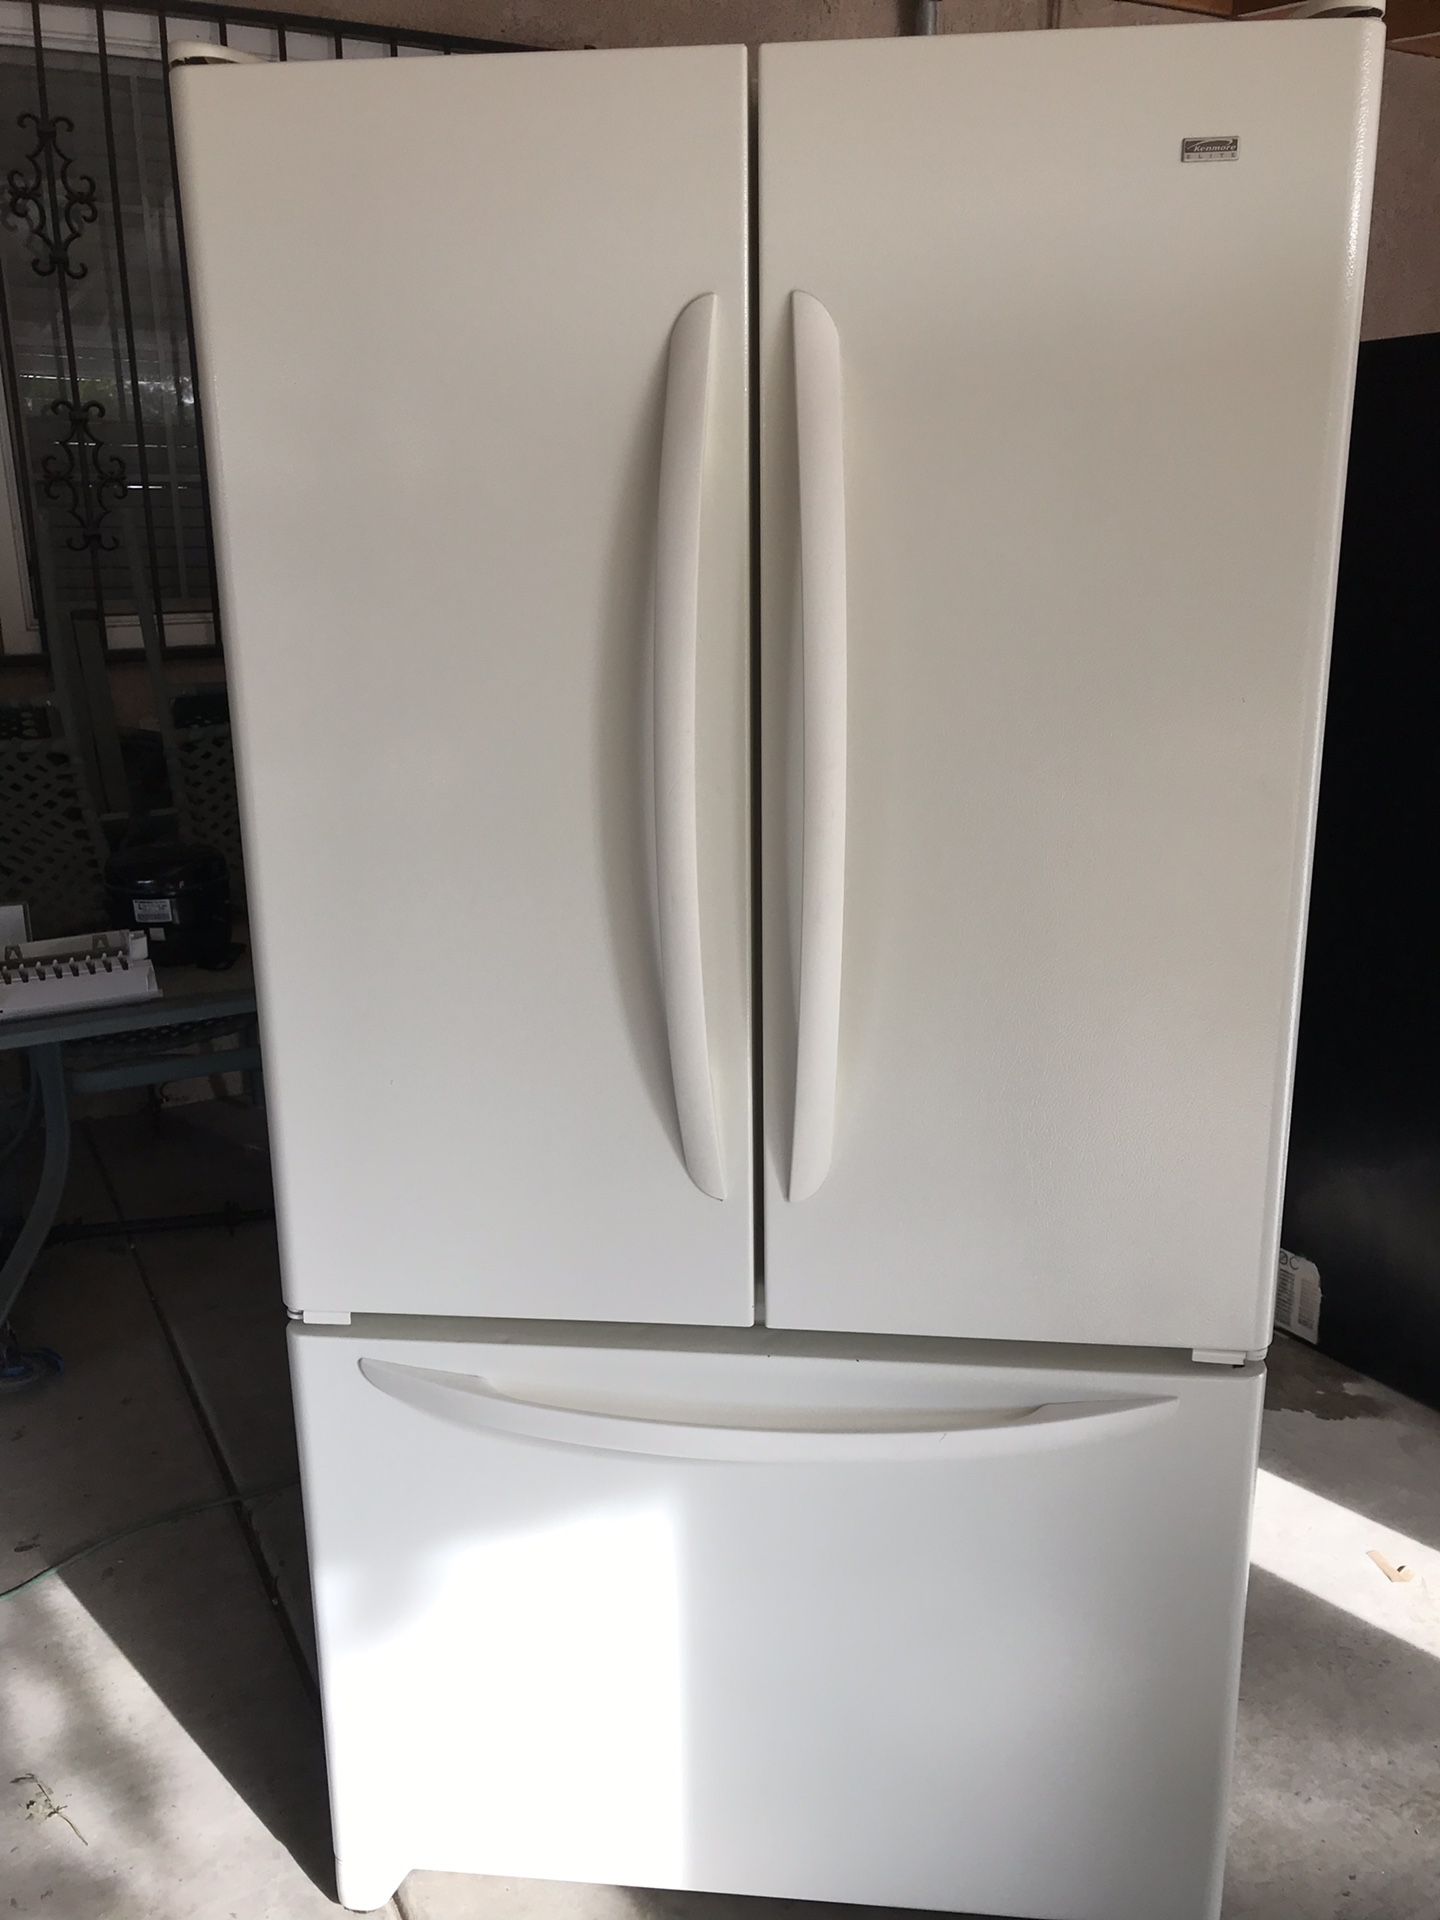 Kenmore Elite French door refrigerator